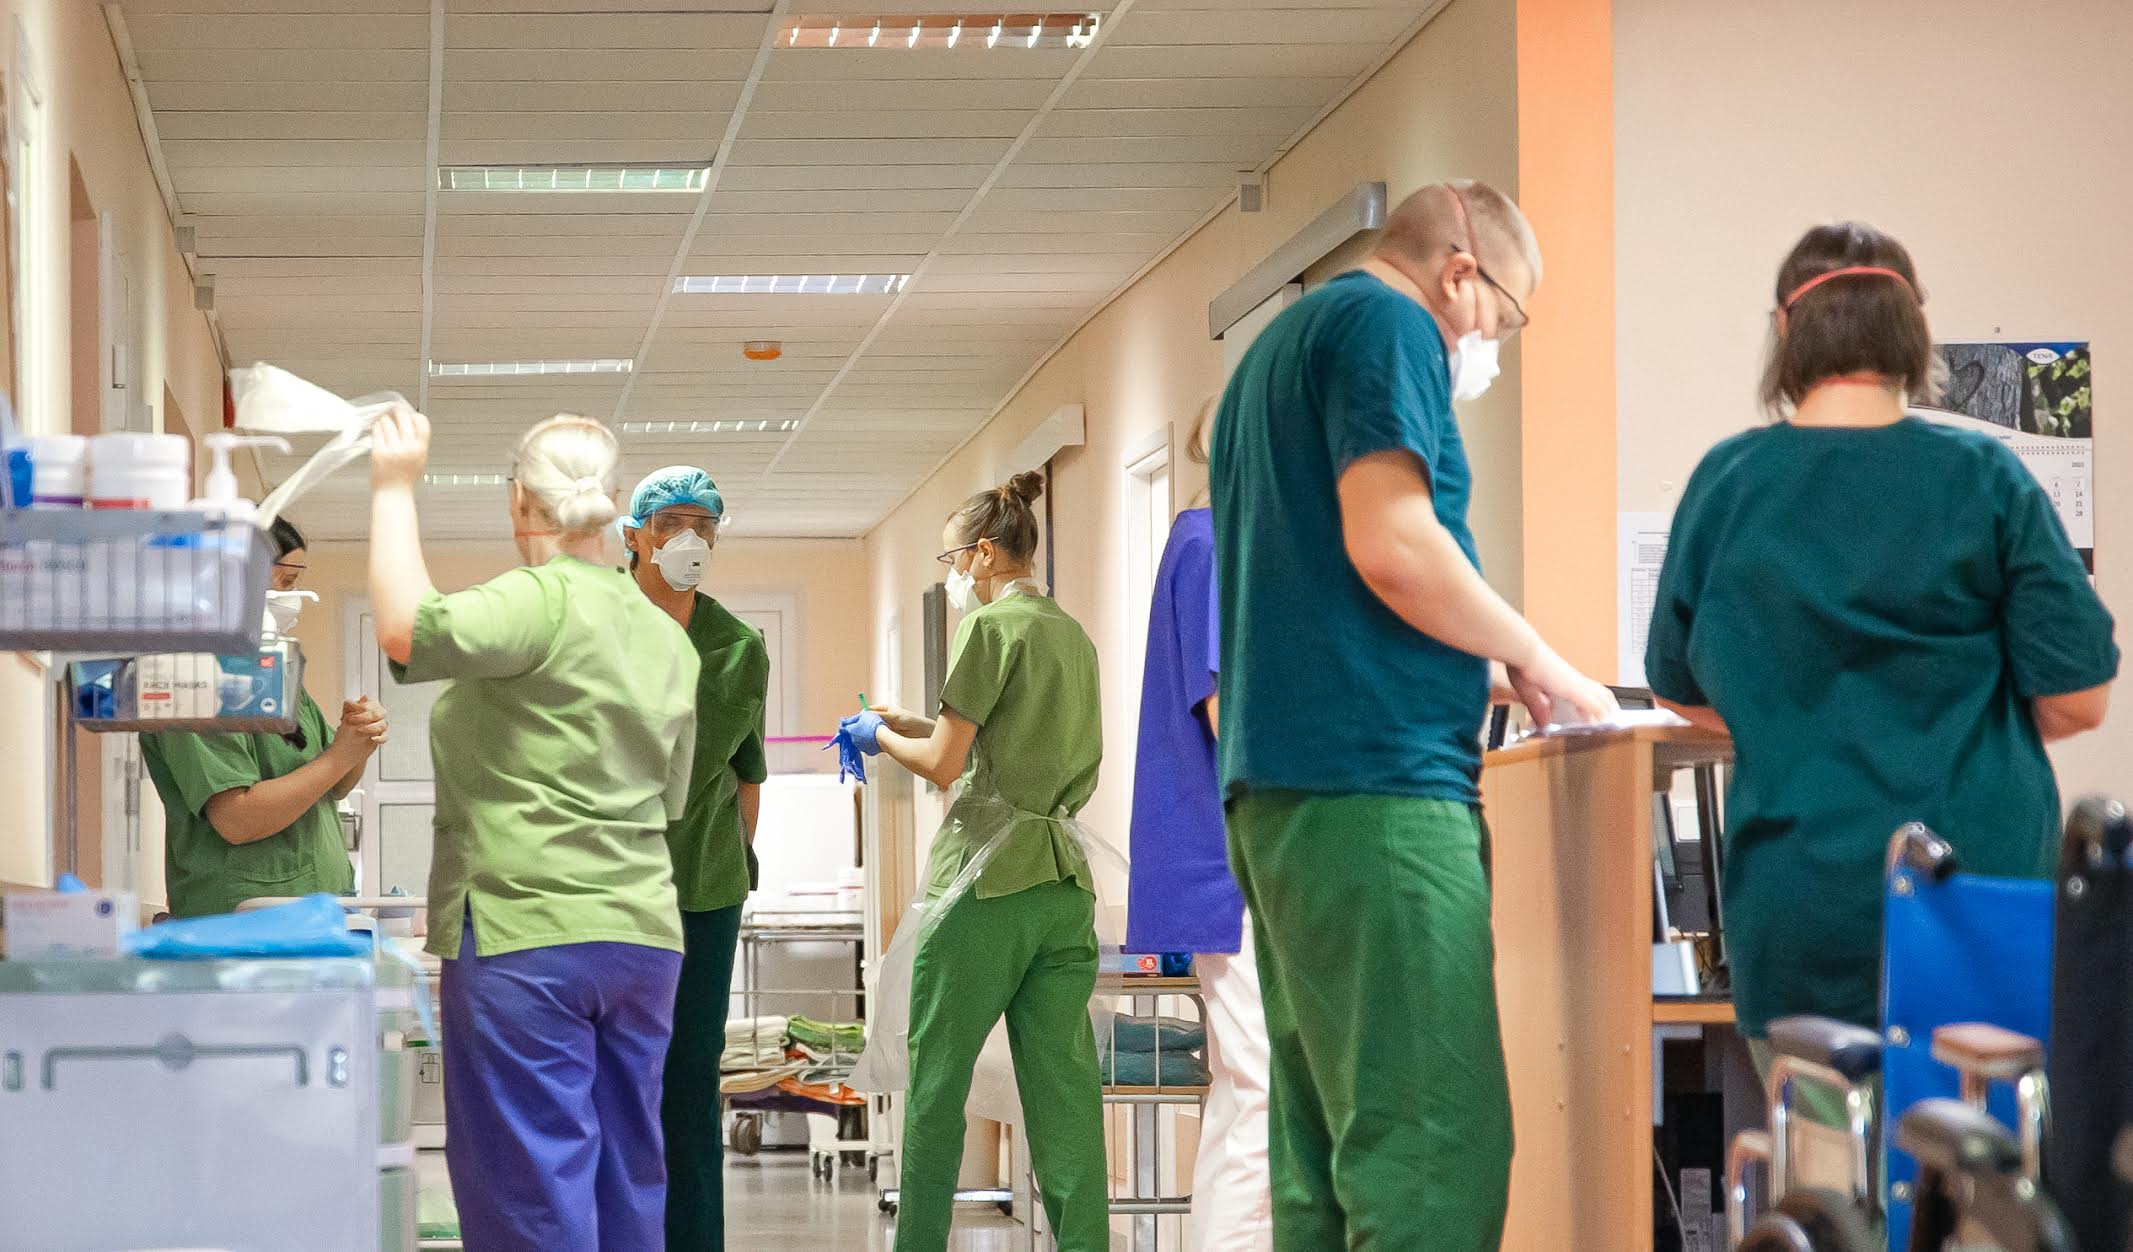 Praegu on Lõuna-Eesti haiglas valmidus kaheksale Covidvoodikohale ja osakonnas on ravil  üks Covid-patsient. Foto: AIGAR NAGEL